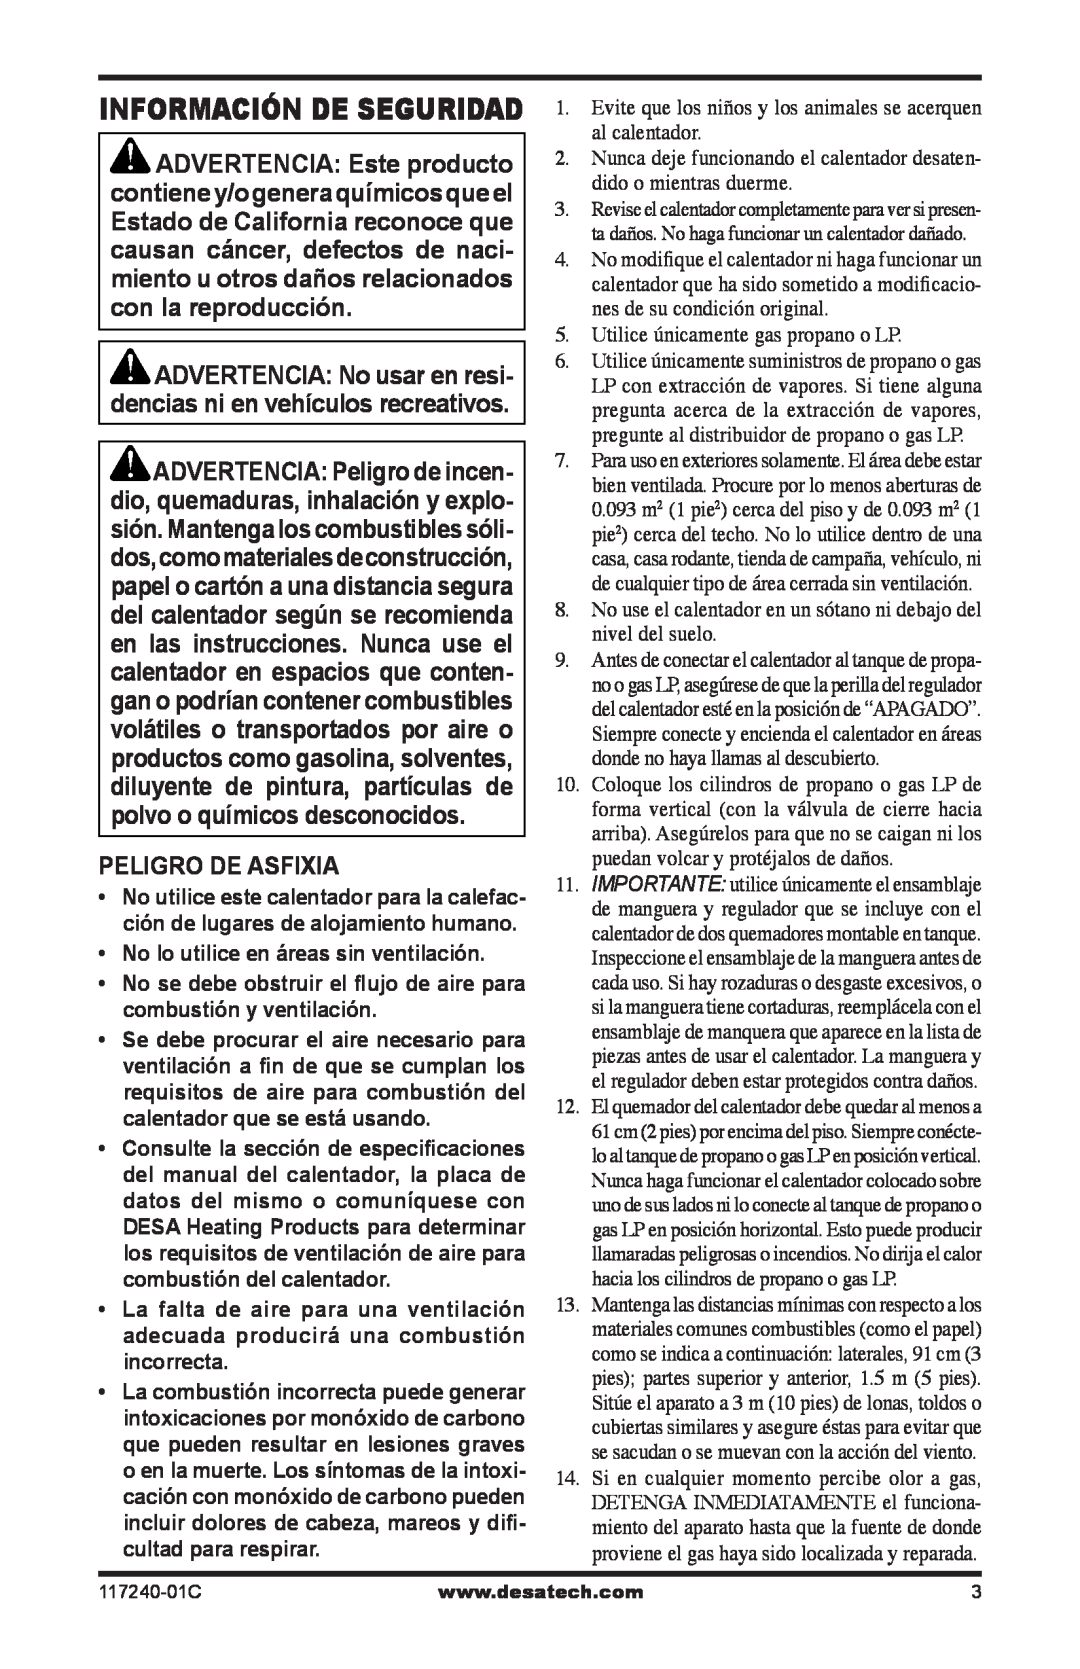 Desa 000 BTu, 10, 000-30 owner manual Información de seguridad, Peligro De Asfixia 